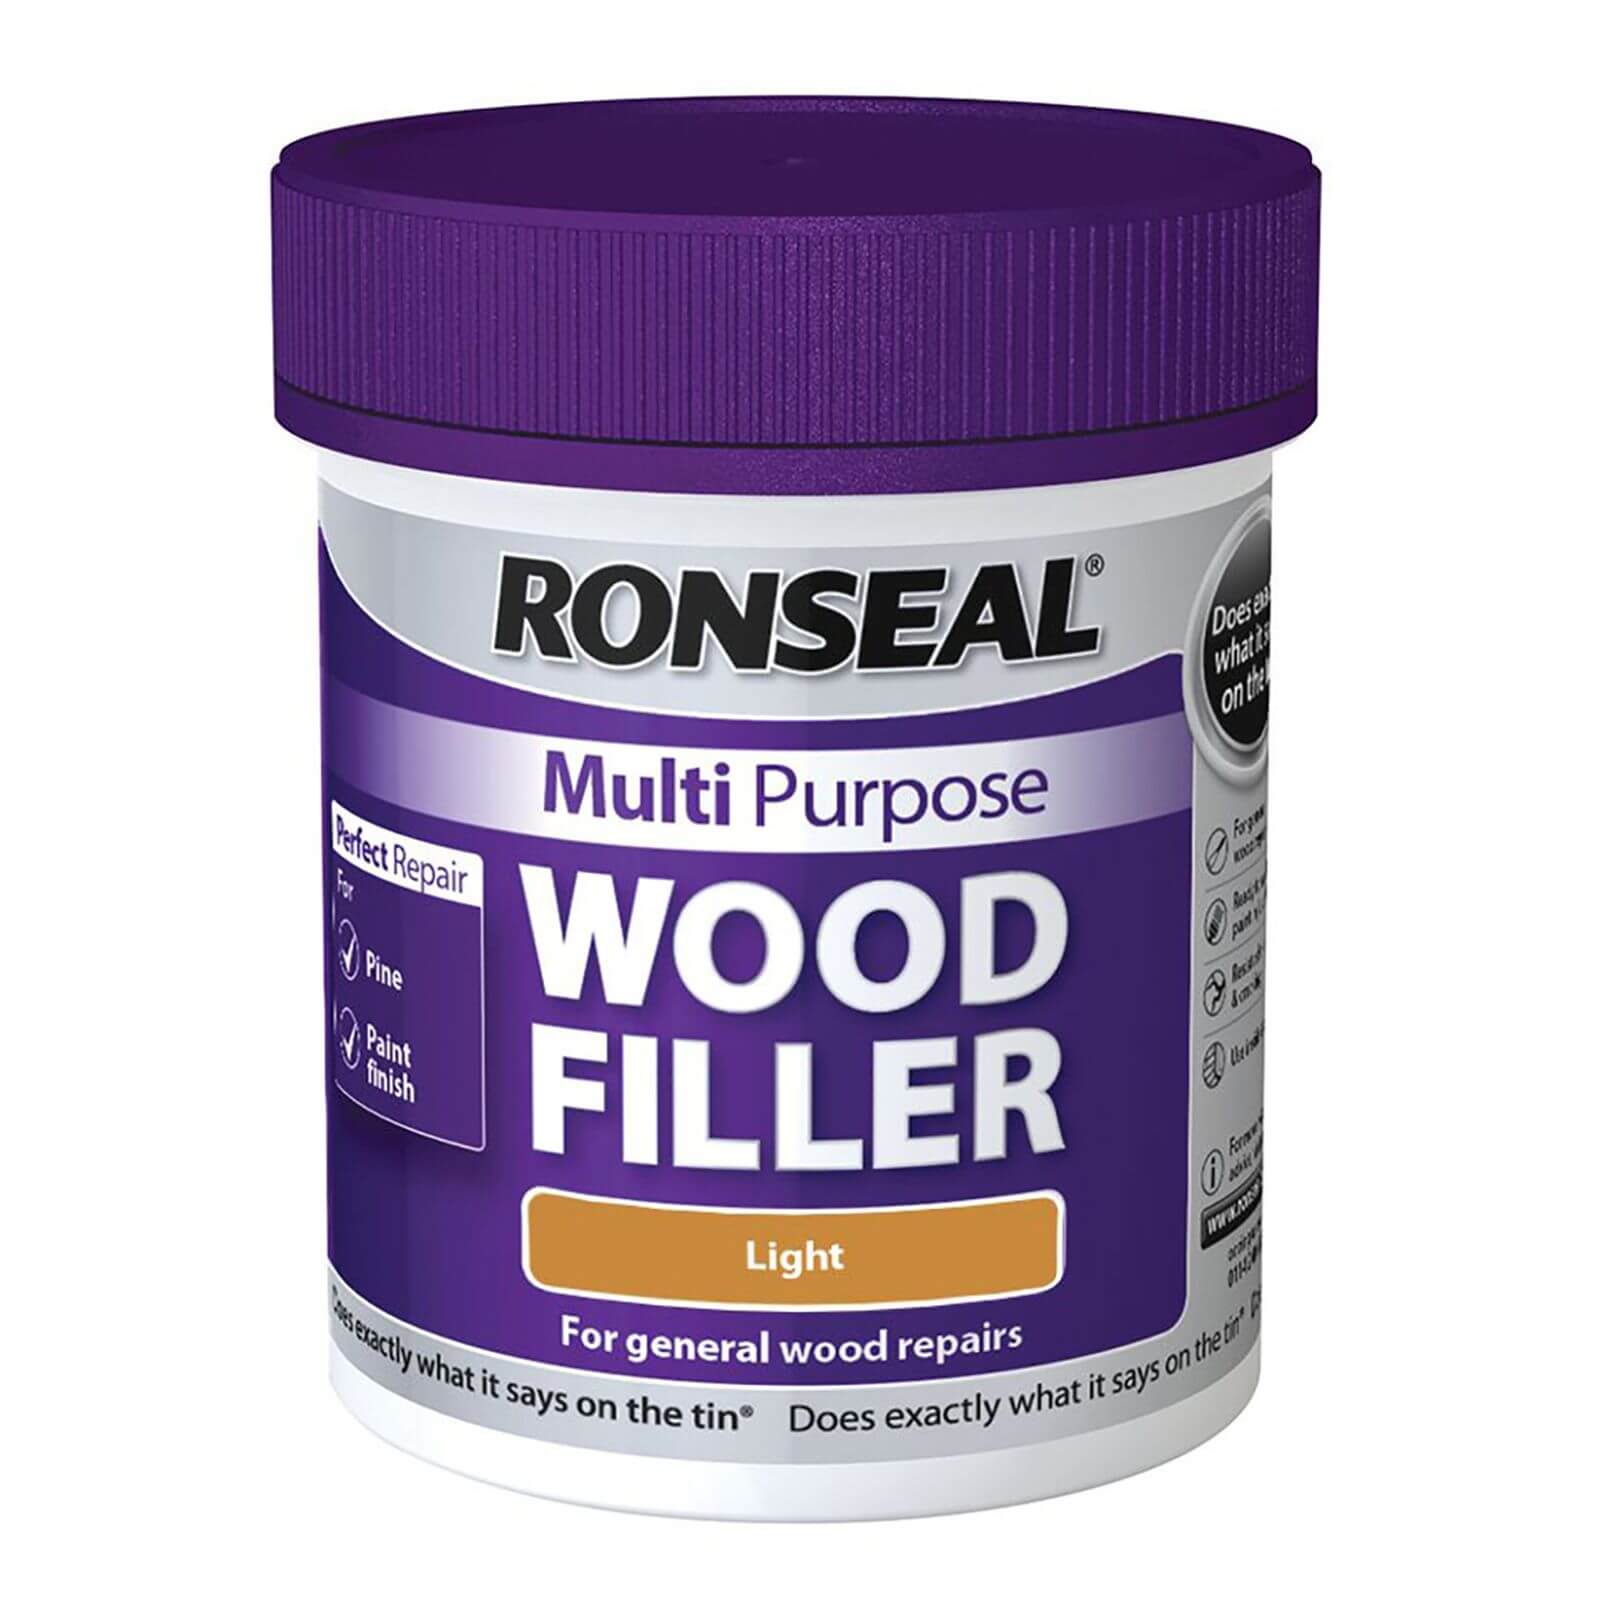 Ronseal Multipurpose Wood Filler Tub - Light - 250g